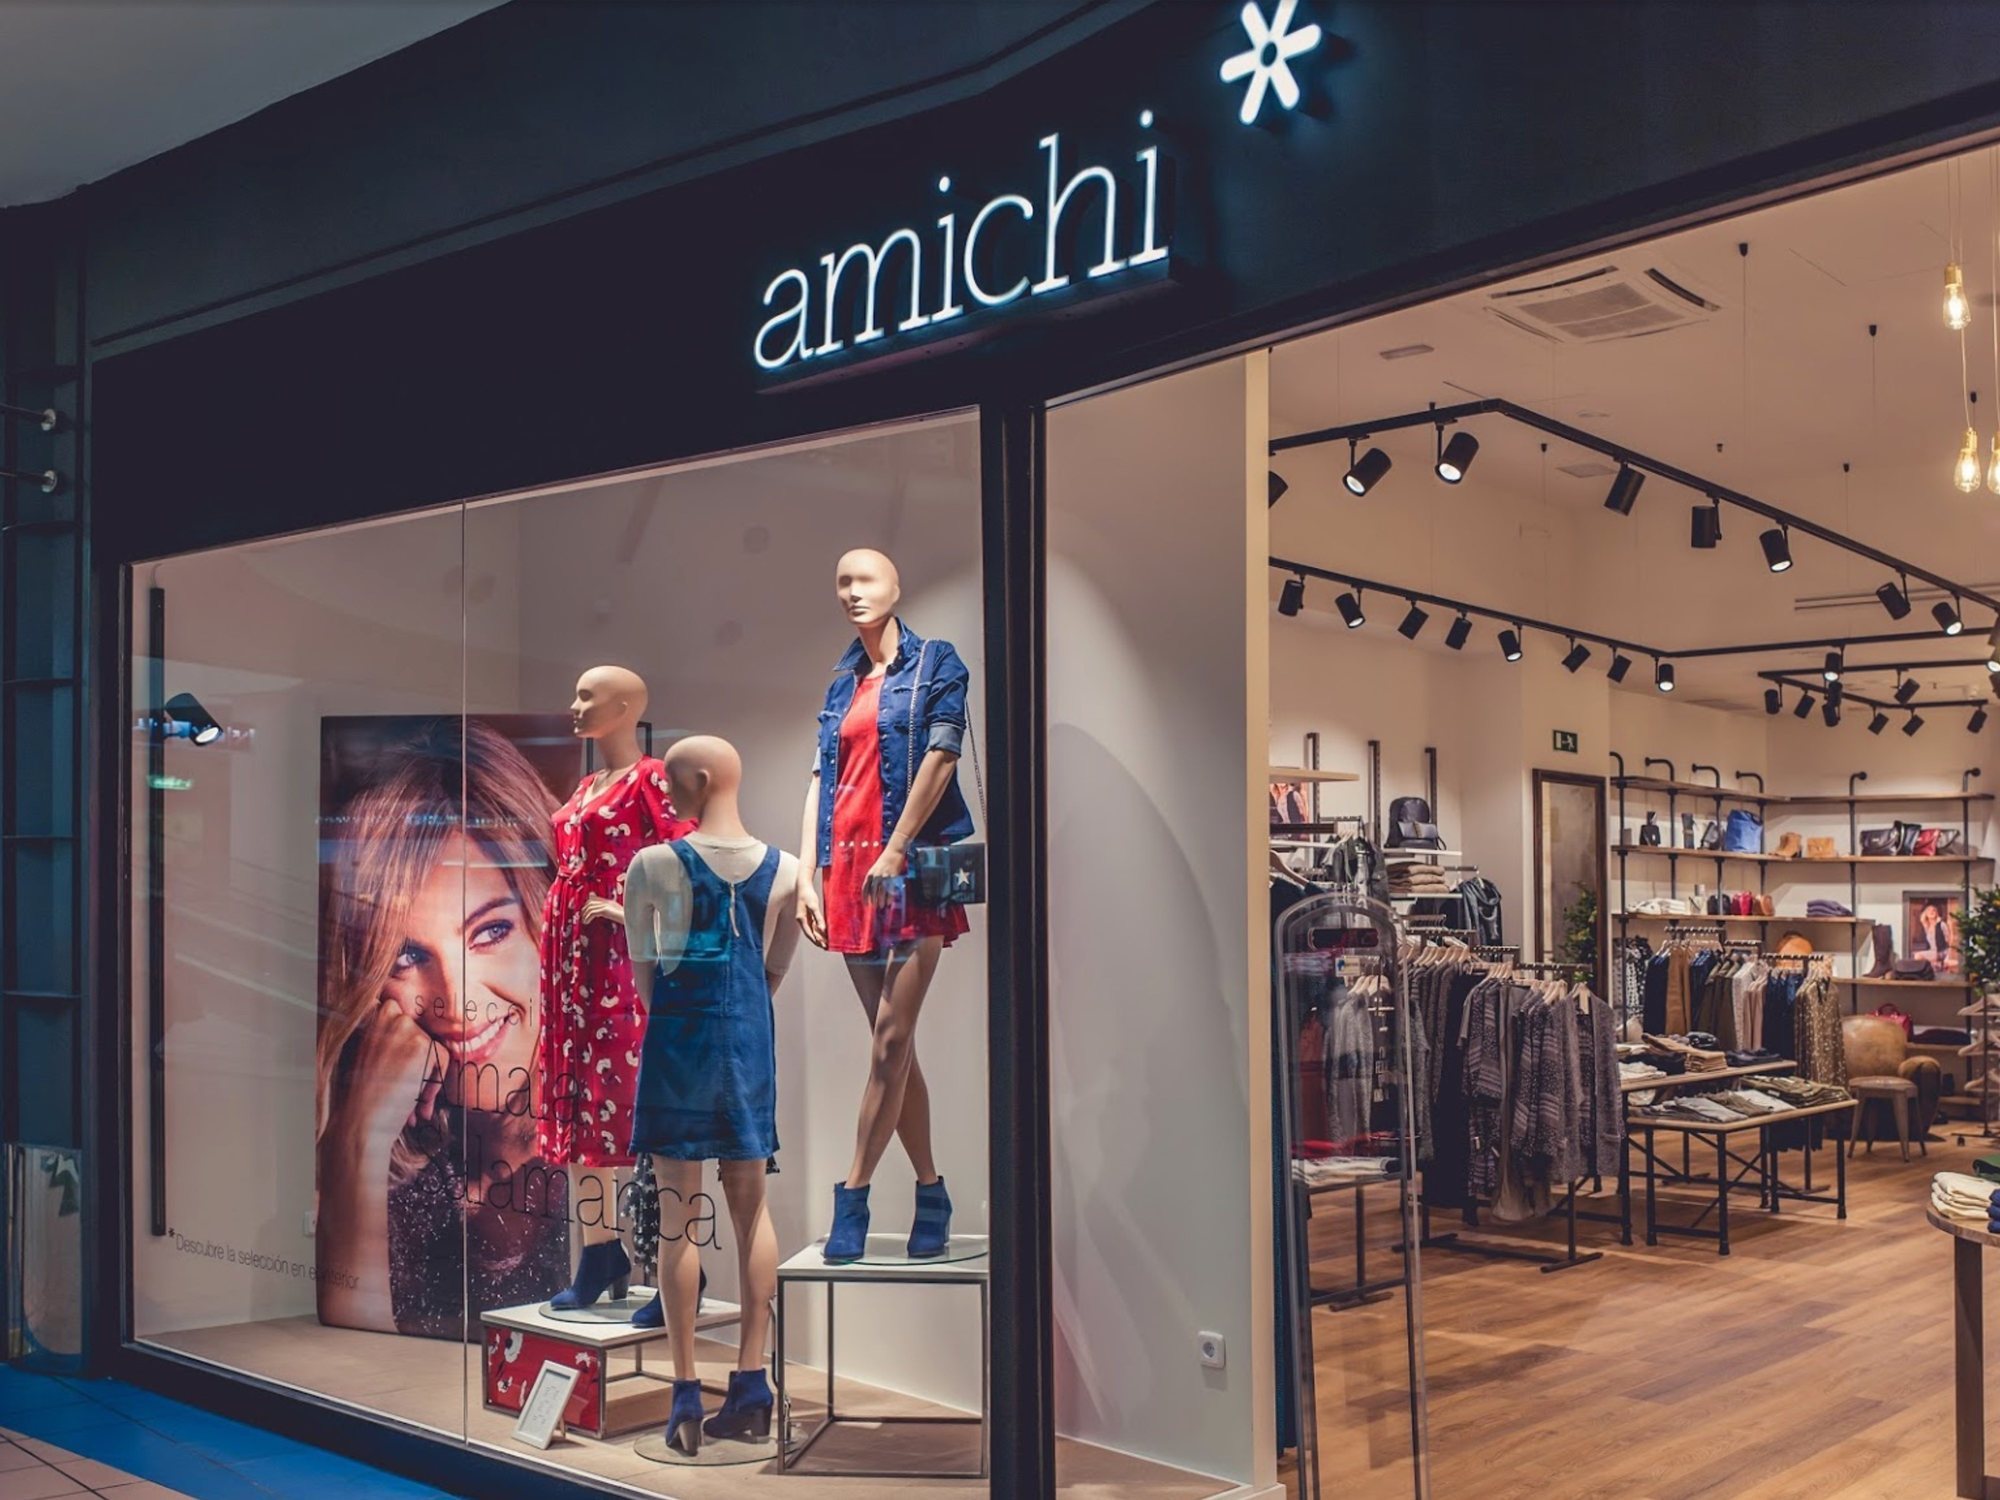 La marca de española Amichi, al del abismo: cierre de tiendas y un nuevo ERE - Los Replicantes